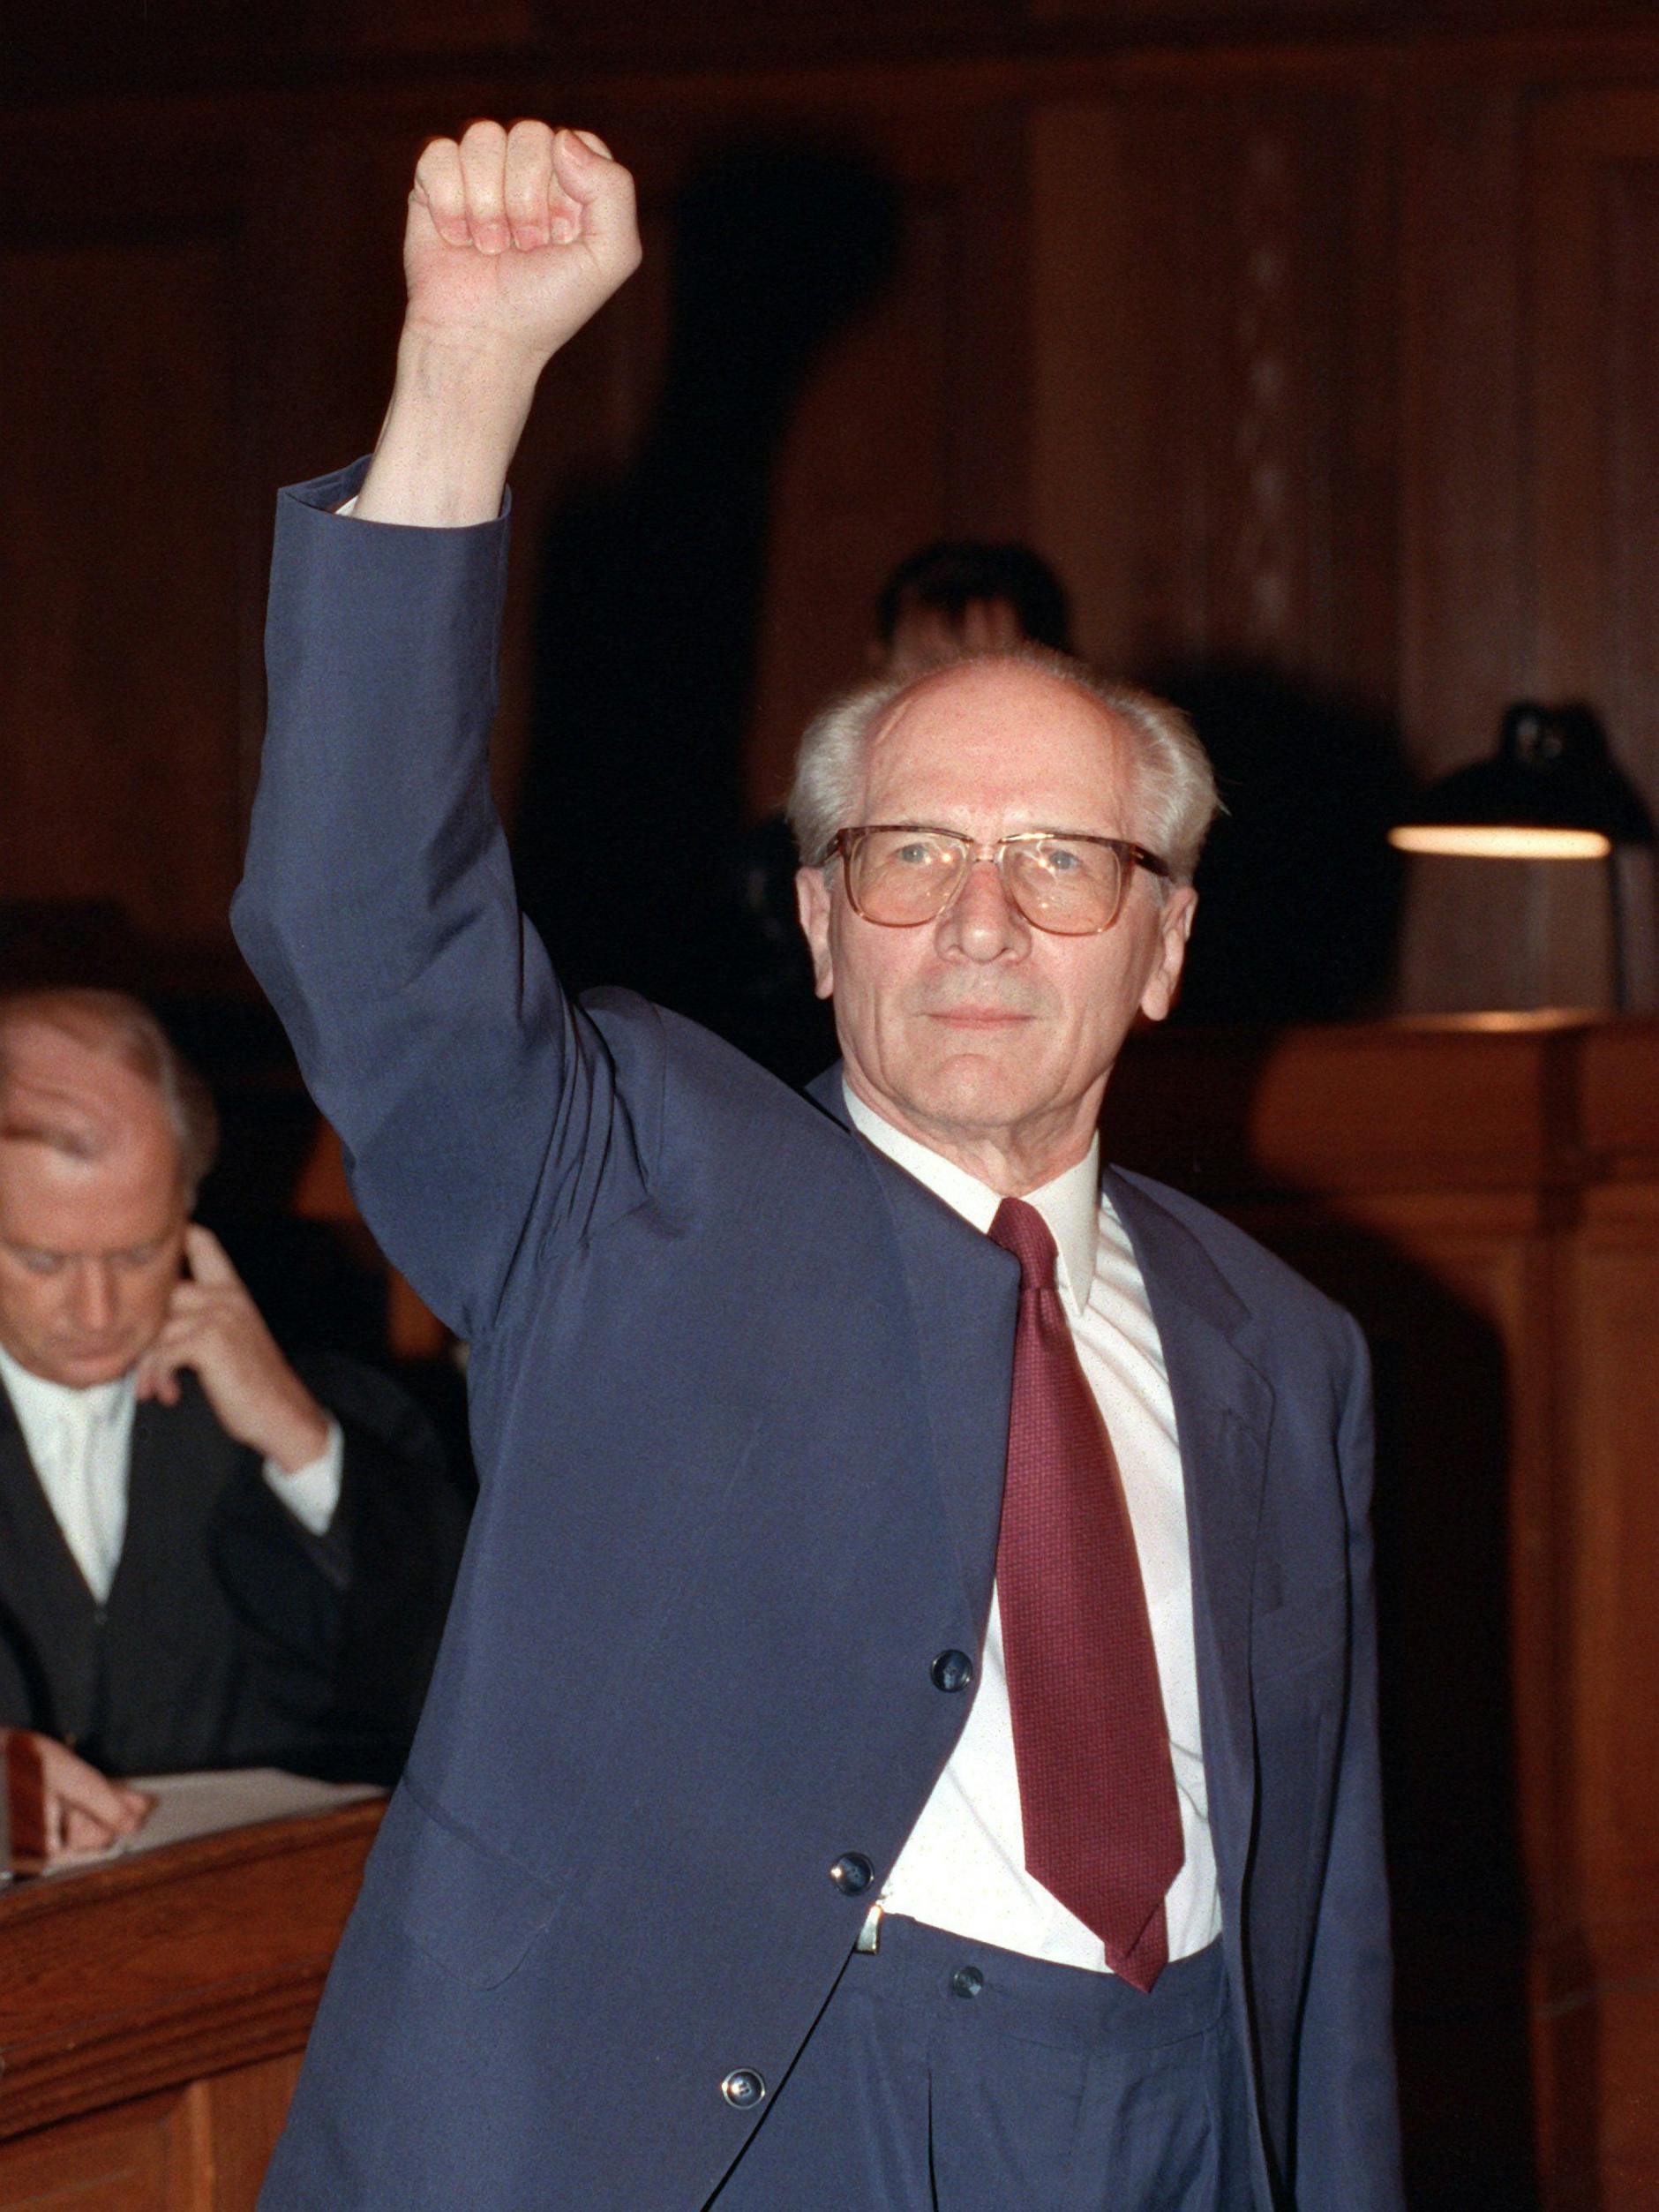 Mit hochgestreckter Faust: Im hellen Anzug, mit roter Krawatte erscheint Erich Honecker im Gerichtssaal.